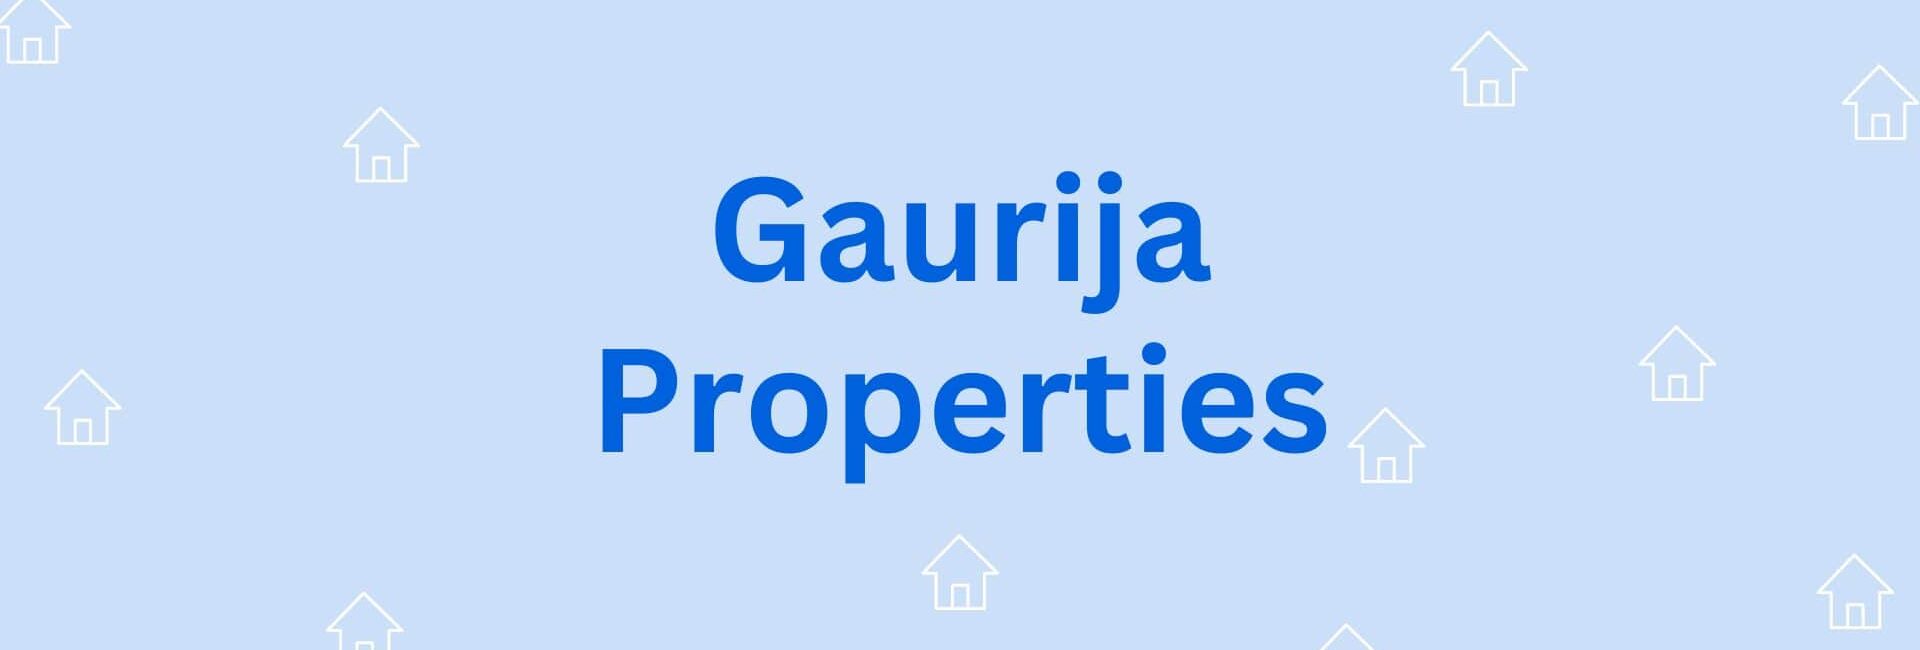 Gaurija Properties - Property Dealer in Hisar sector 14